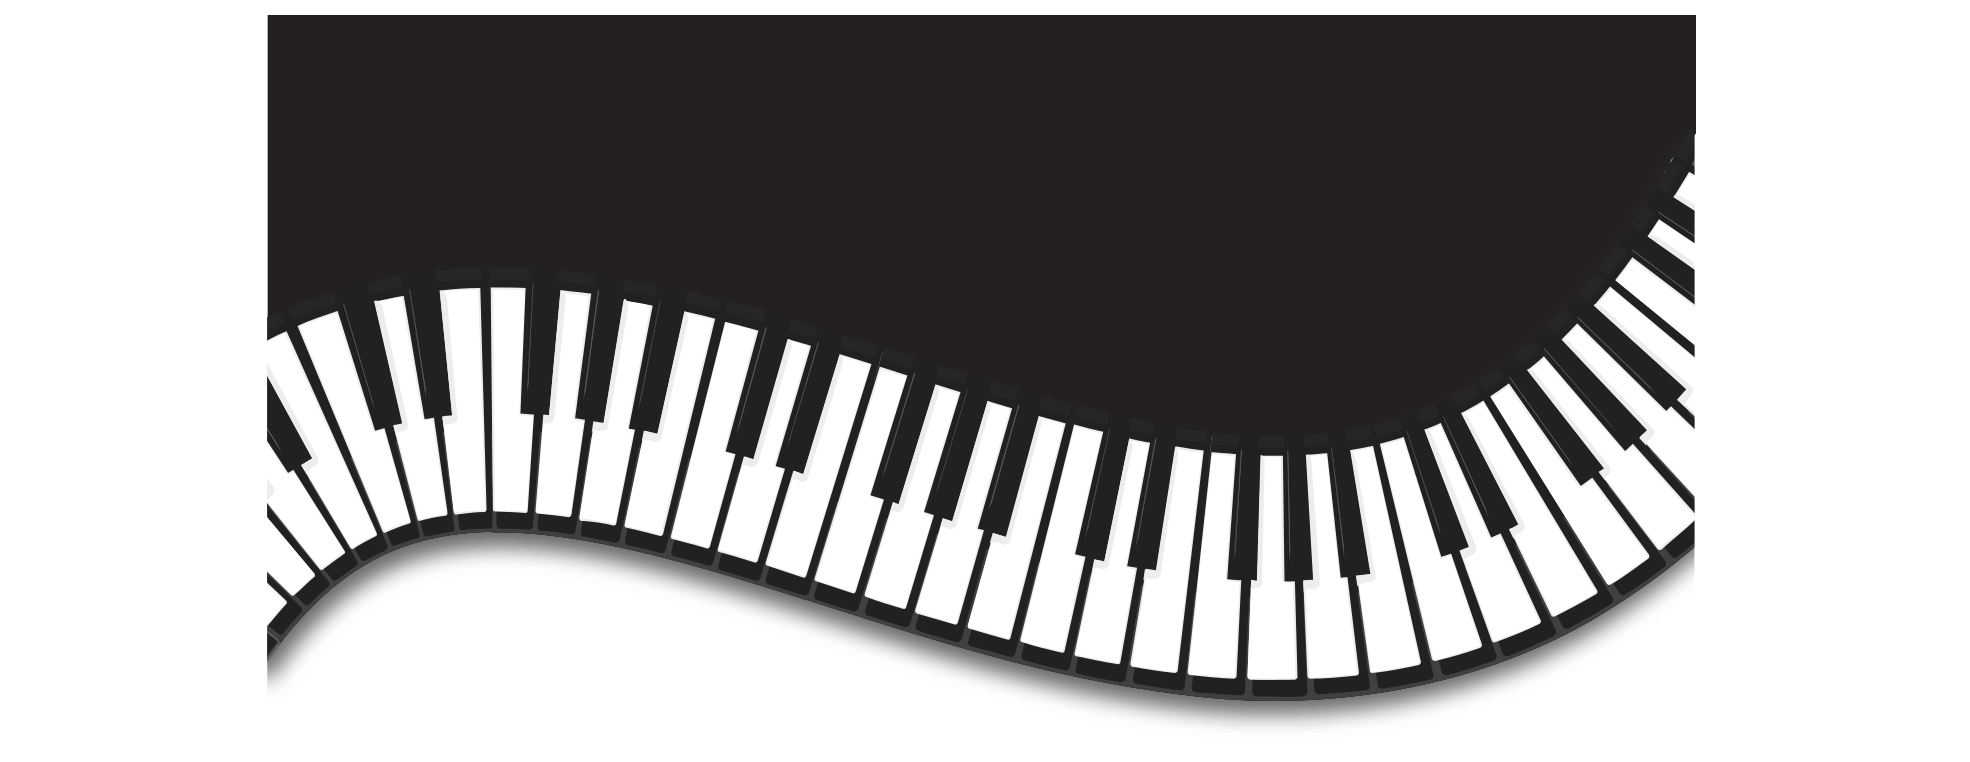 Immagine del Piano della tastiera di musica del piano